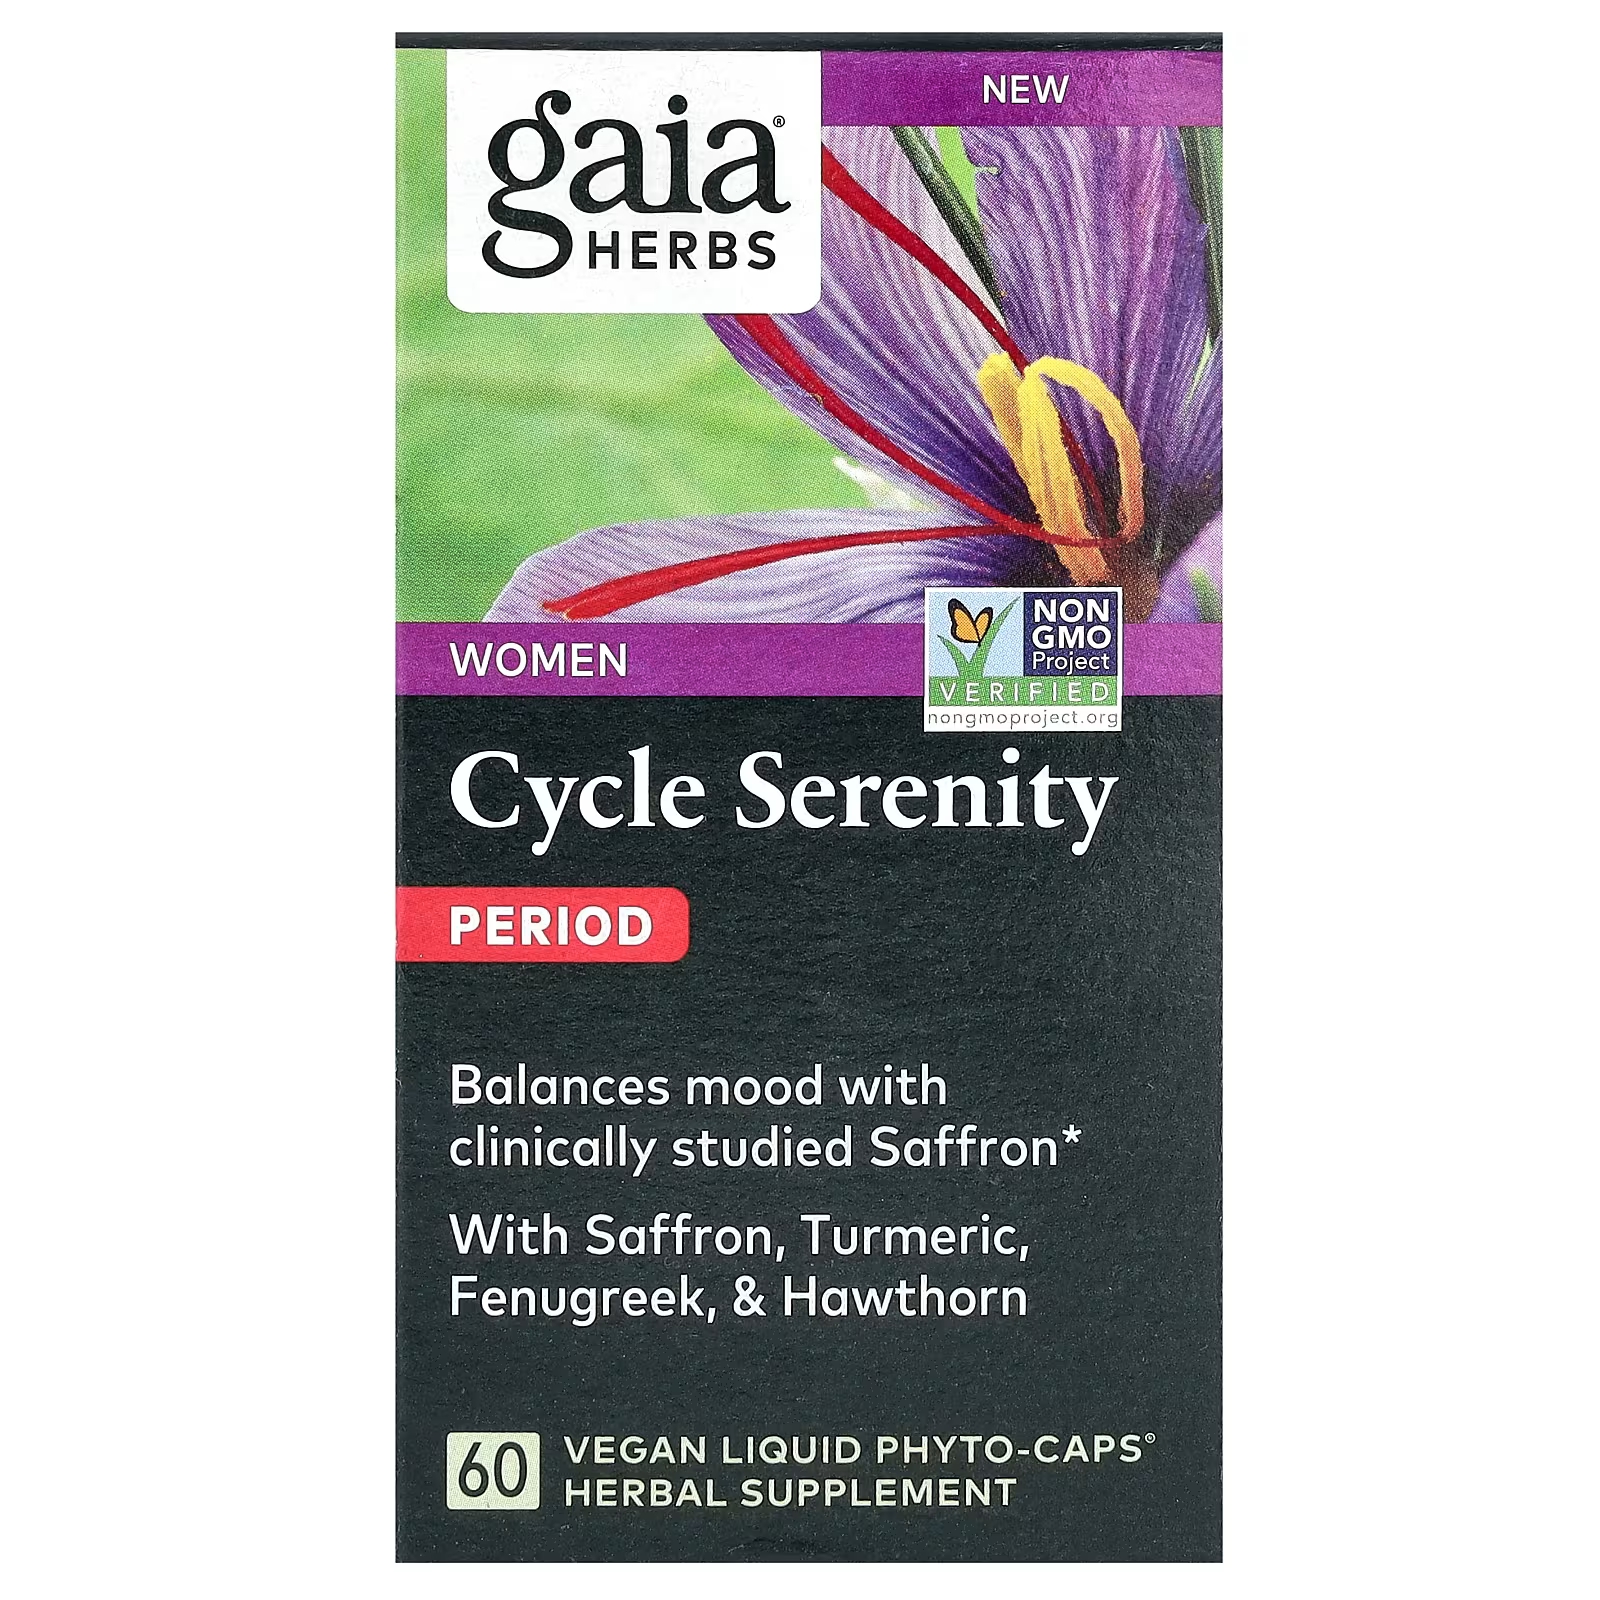 Растительная добавка Gaia Herbs Women Cycle Serenity Period, 60 фитокапсул сыр полутвердый danke herzog с пажитником 45% 180 г